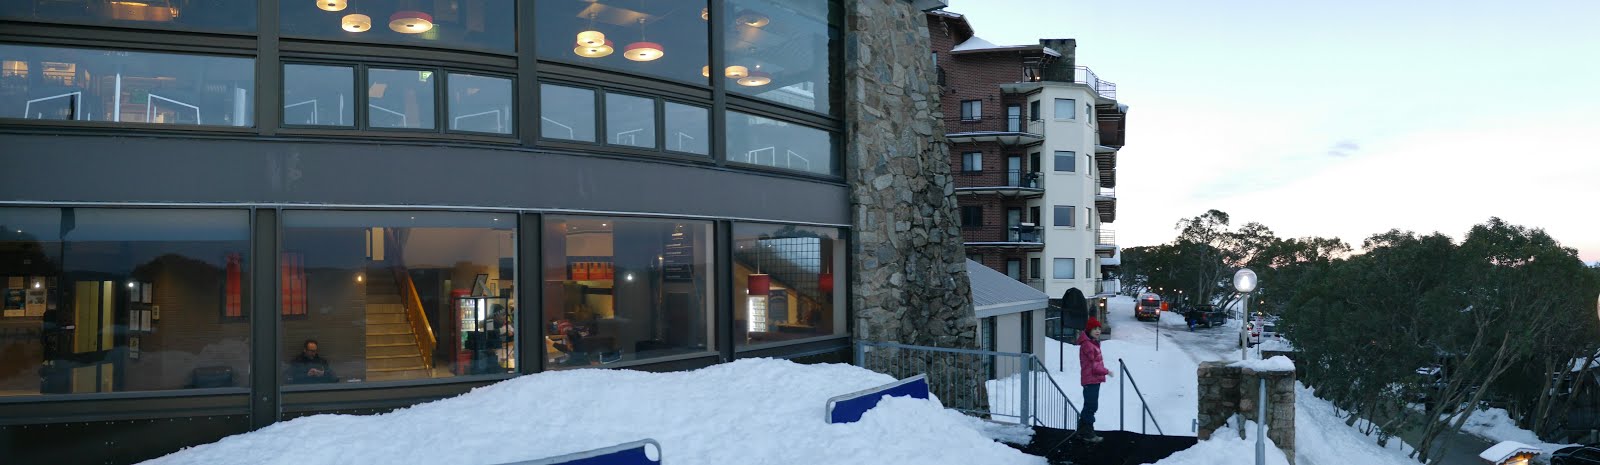 Hotel Restaurant frontage